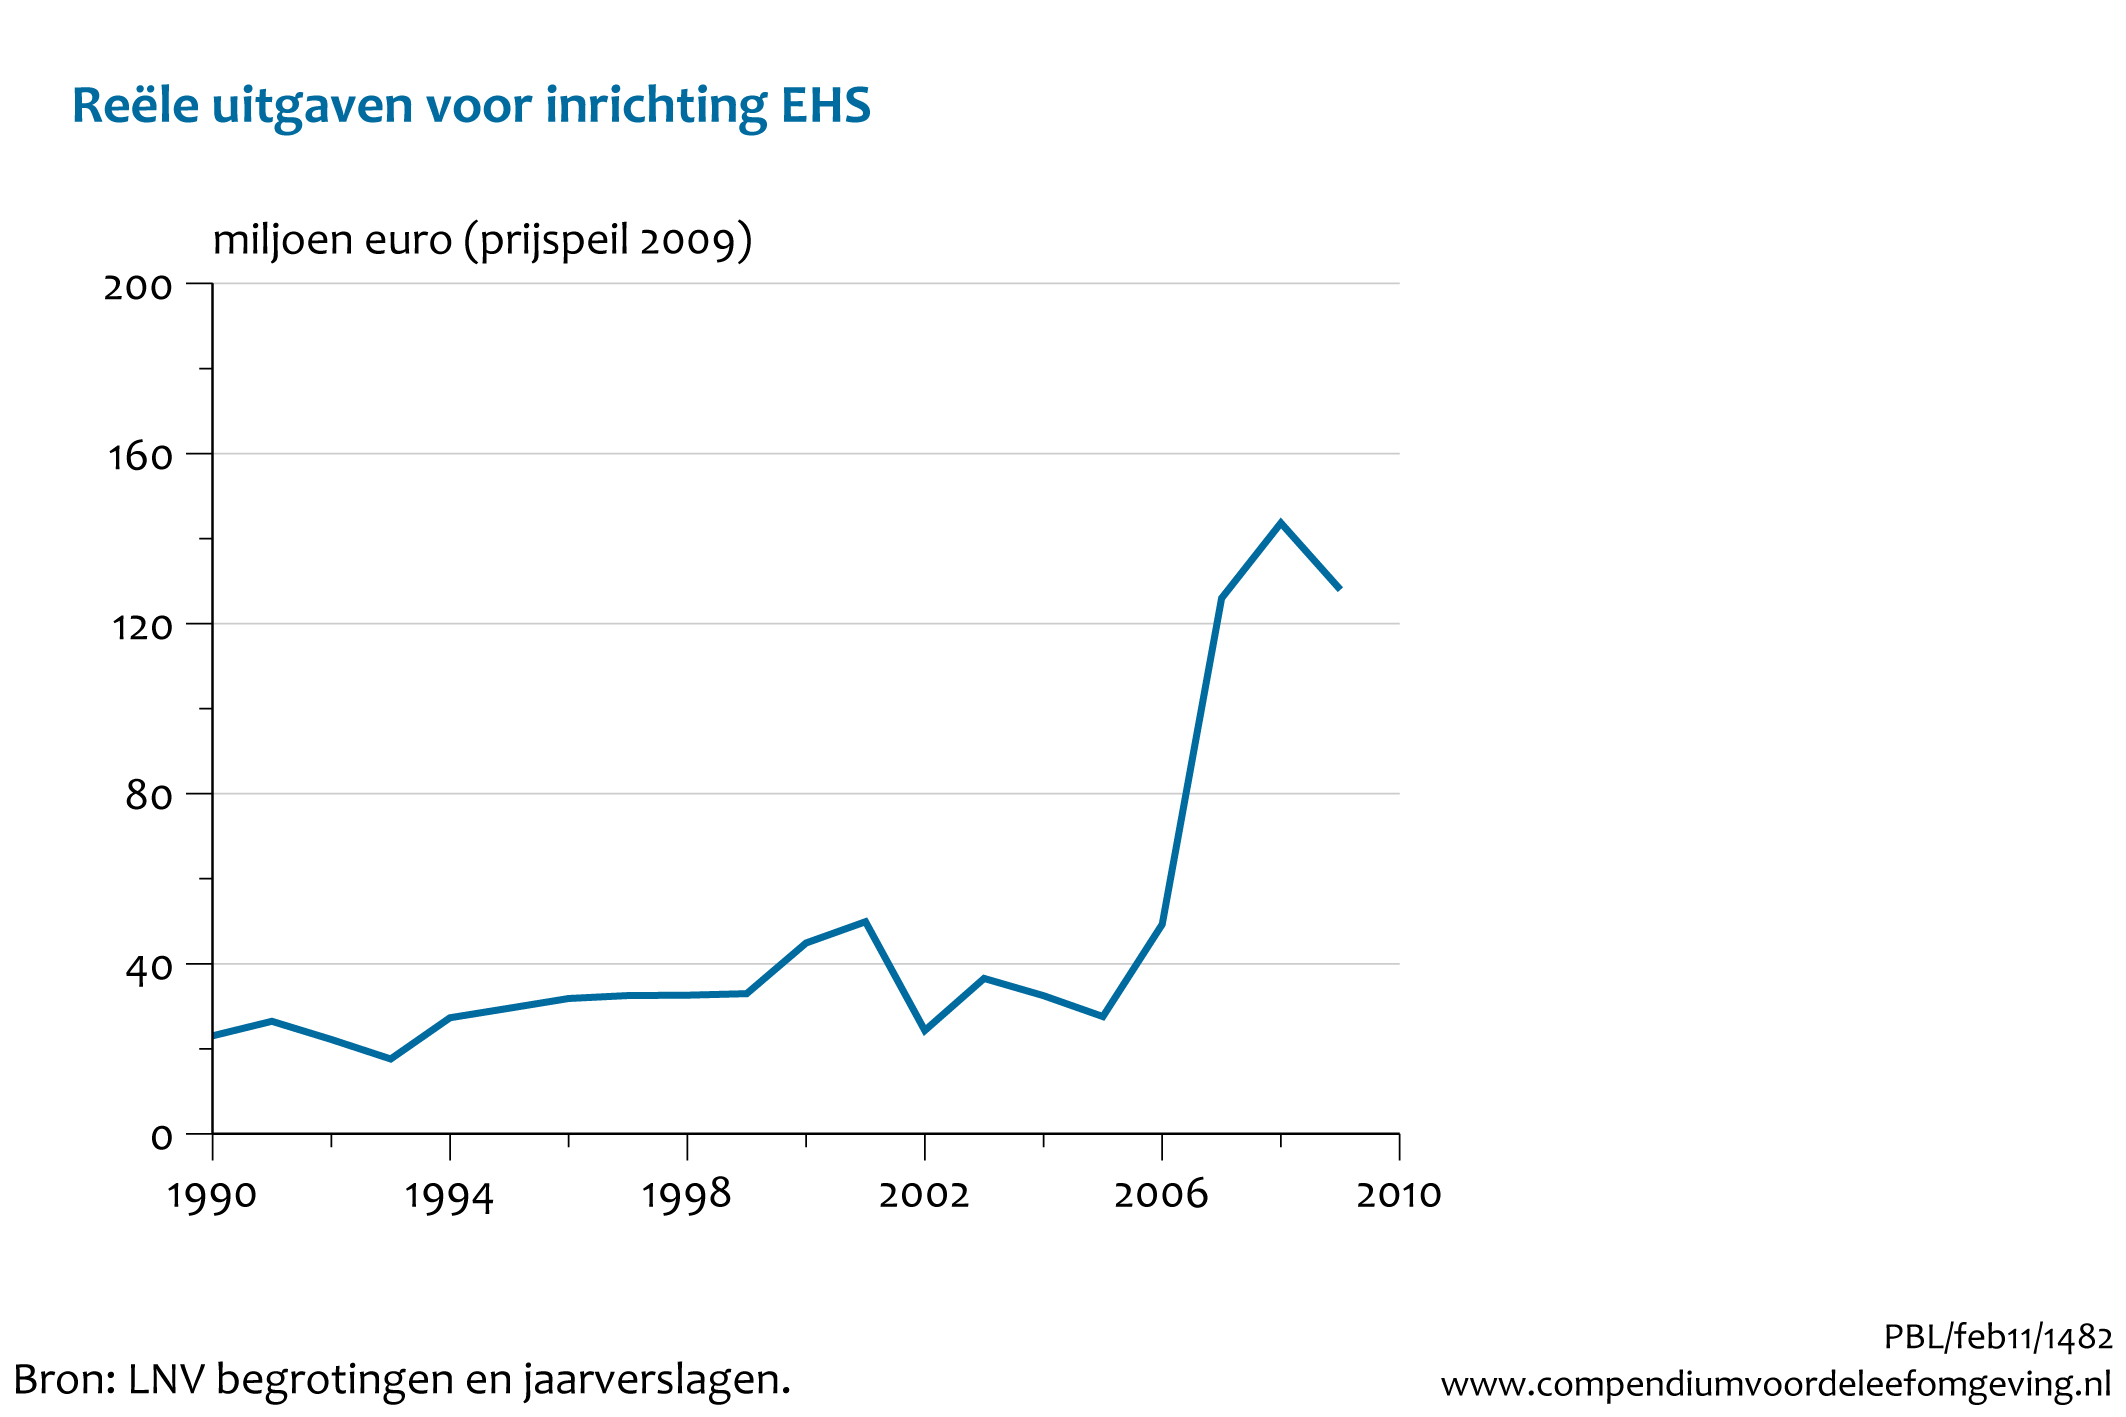 Figuur Trend Uitgaven Inrichting EHS 1990-2009. In de rest van de tekst wordt deze figuur uitgebreider uitgelegd.